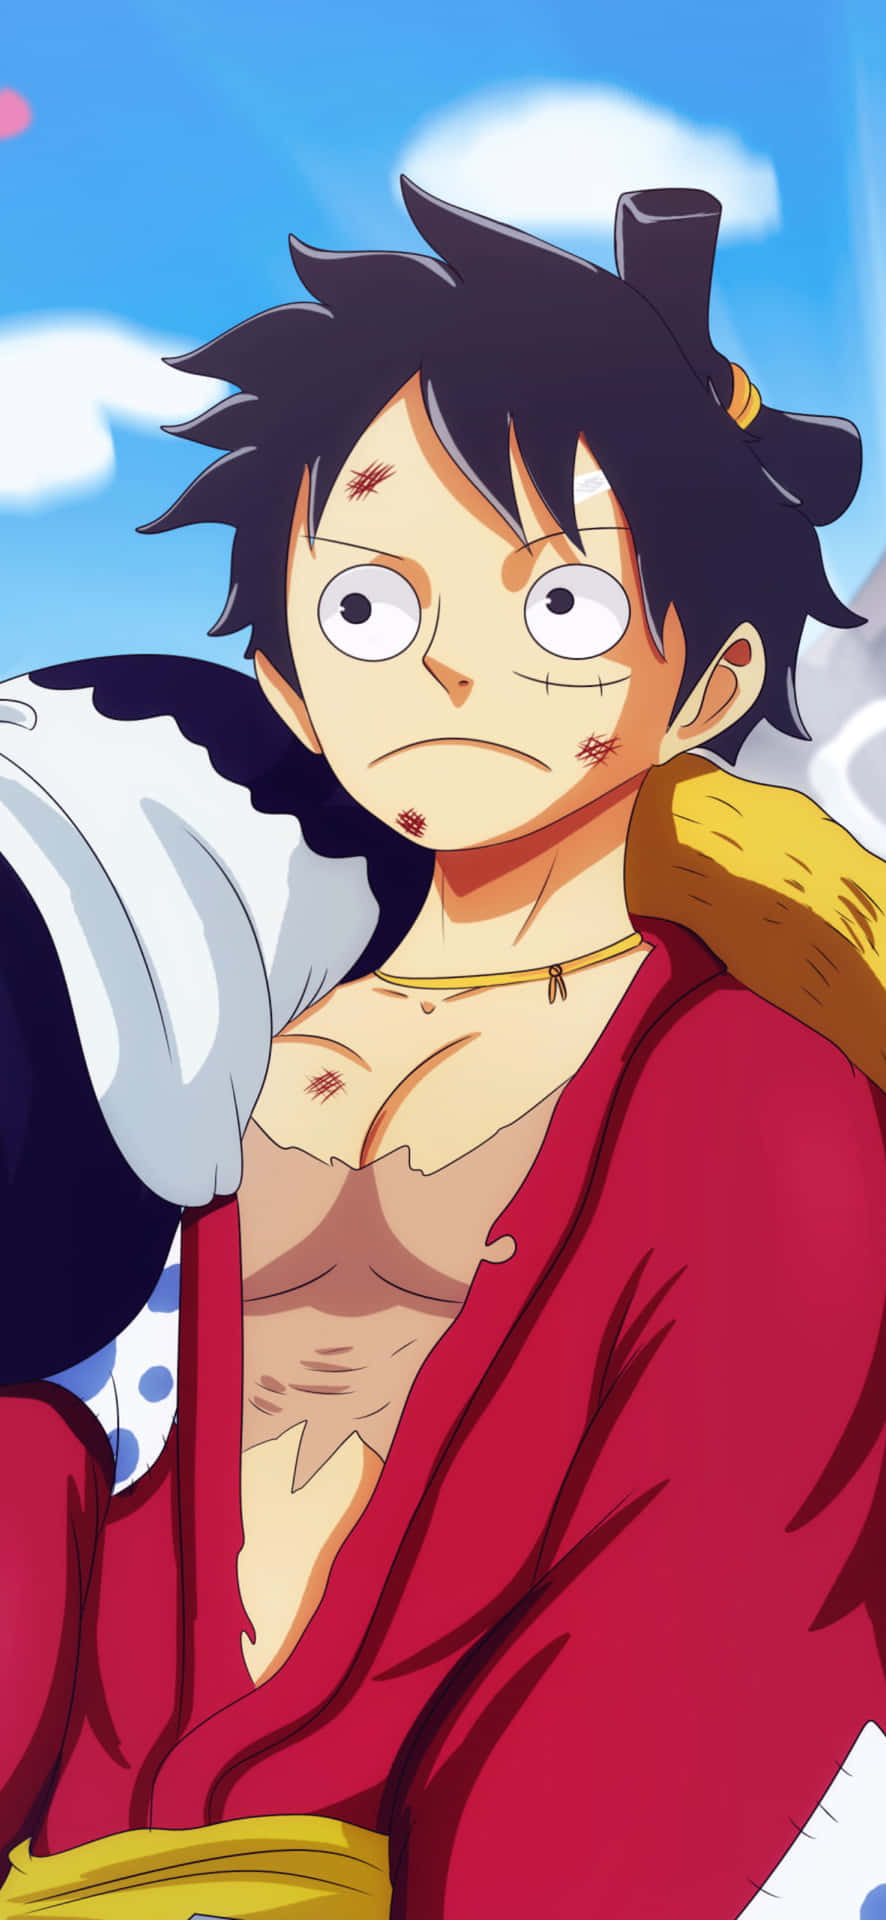 Luffy,protagonista Dell'amato Anime One Piece, Mostrato Sull'iconico Iphone. Sfondo